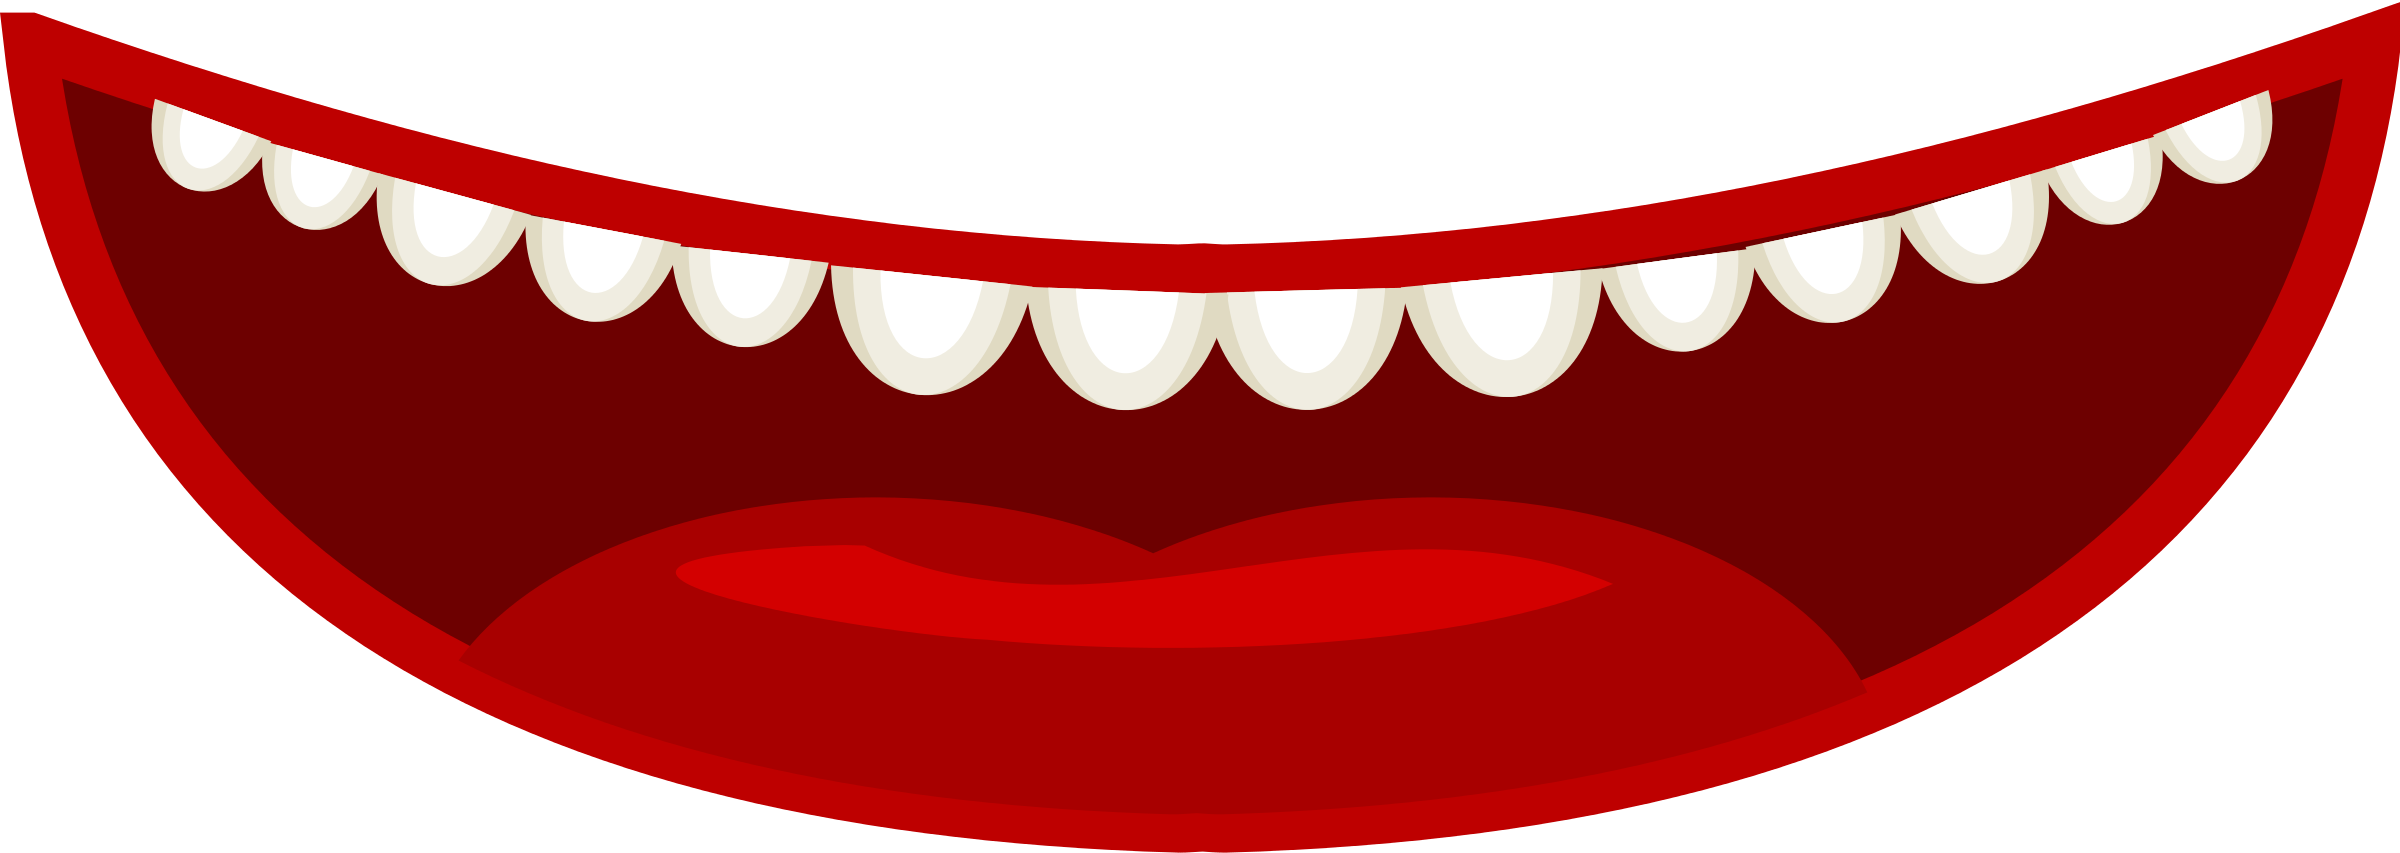 Cartoon Mouth Clipart